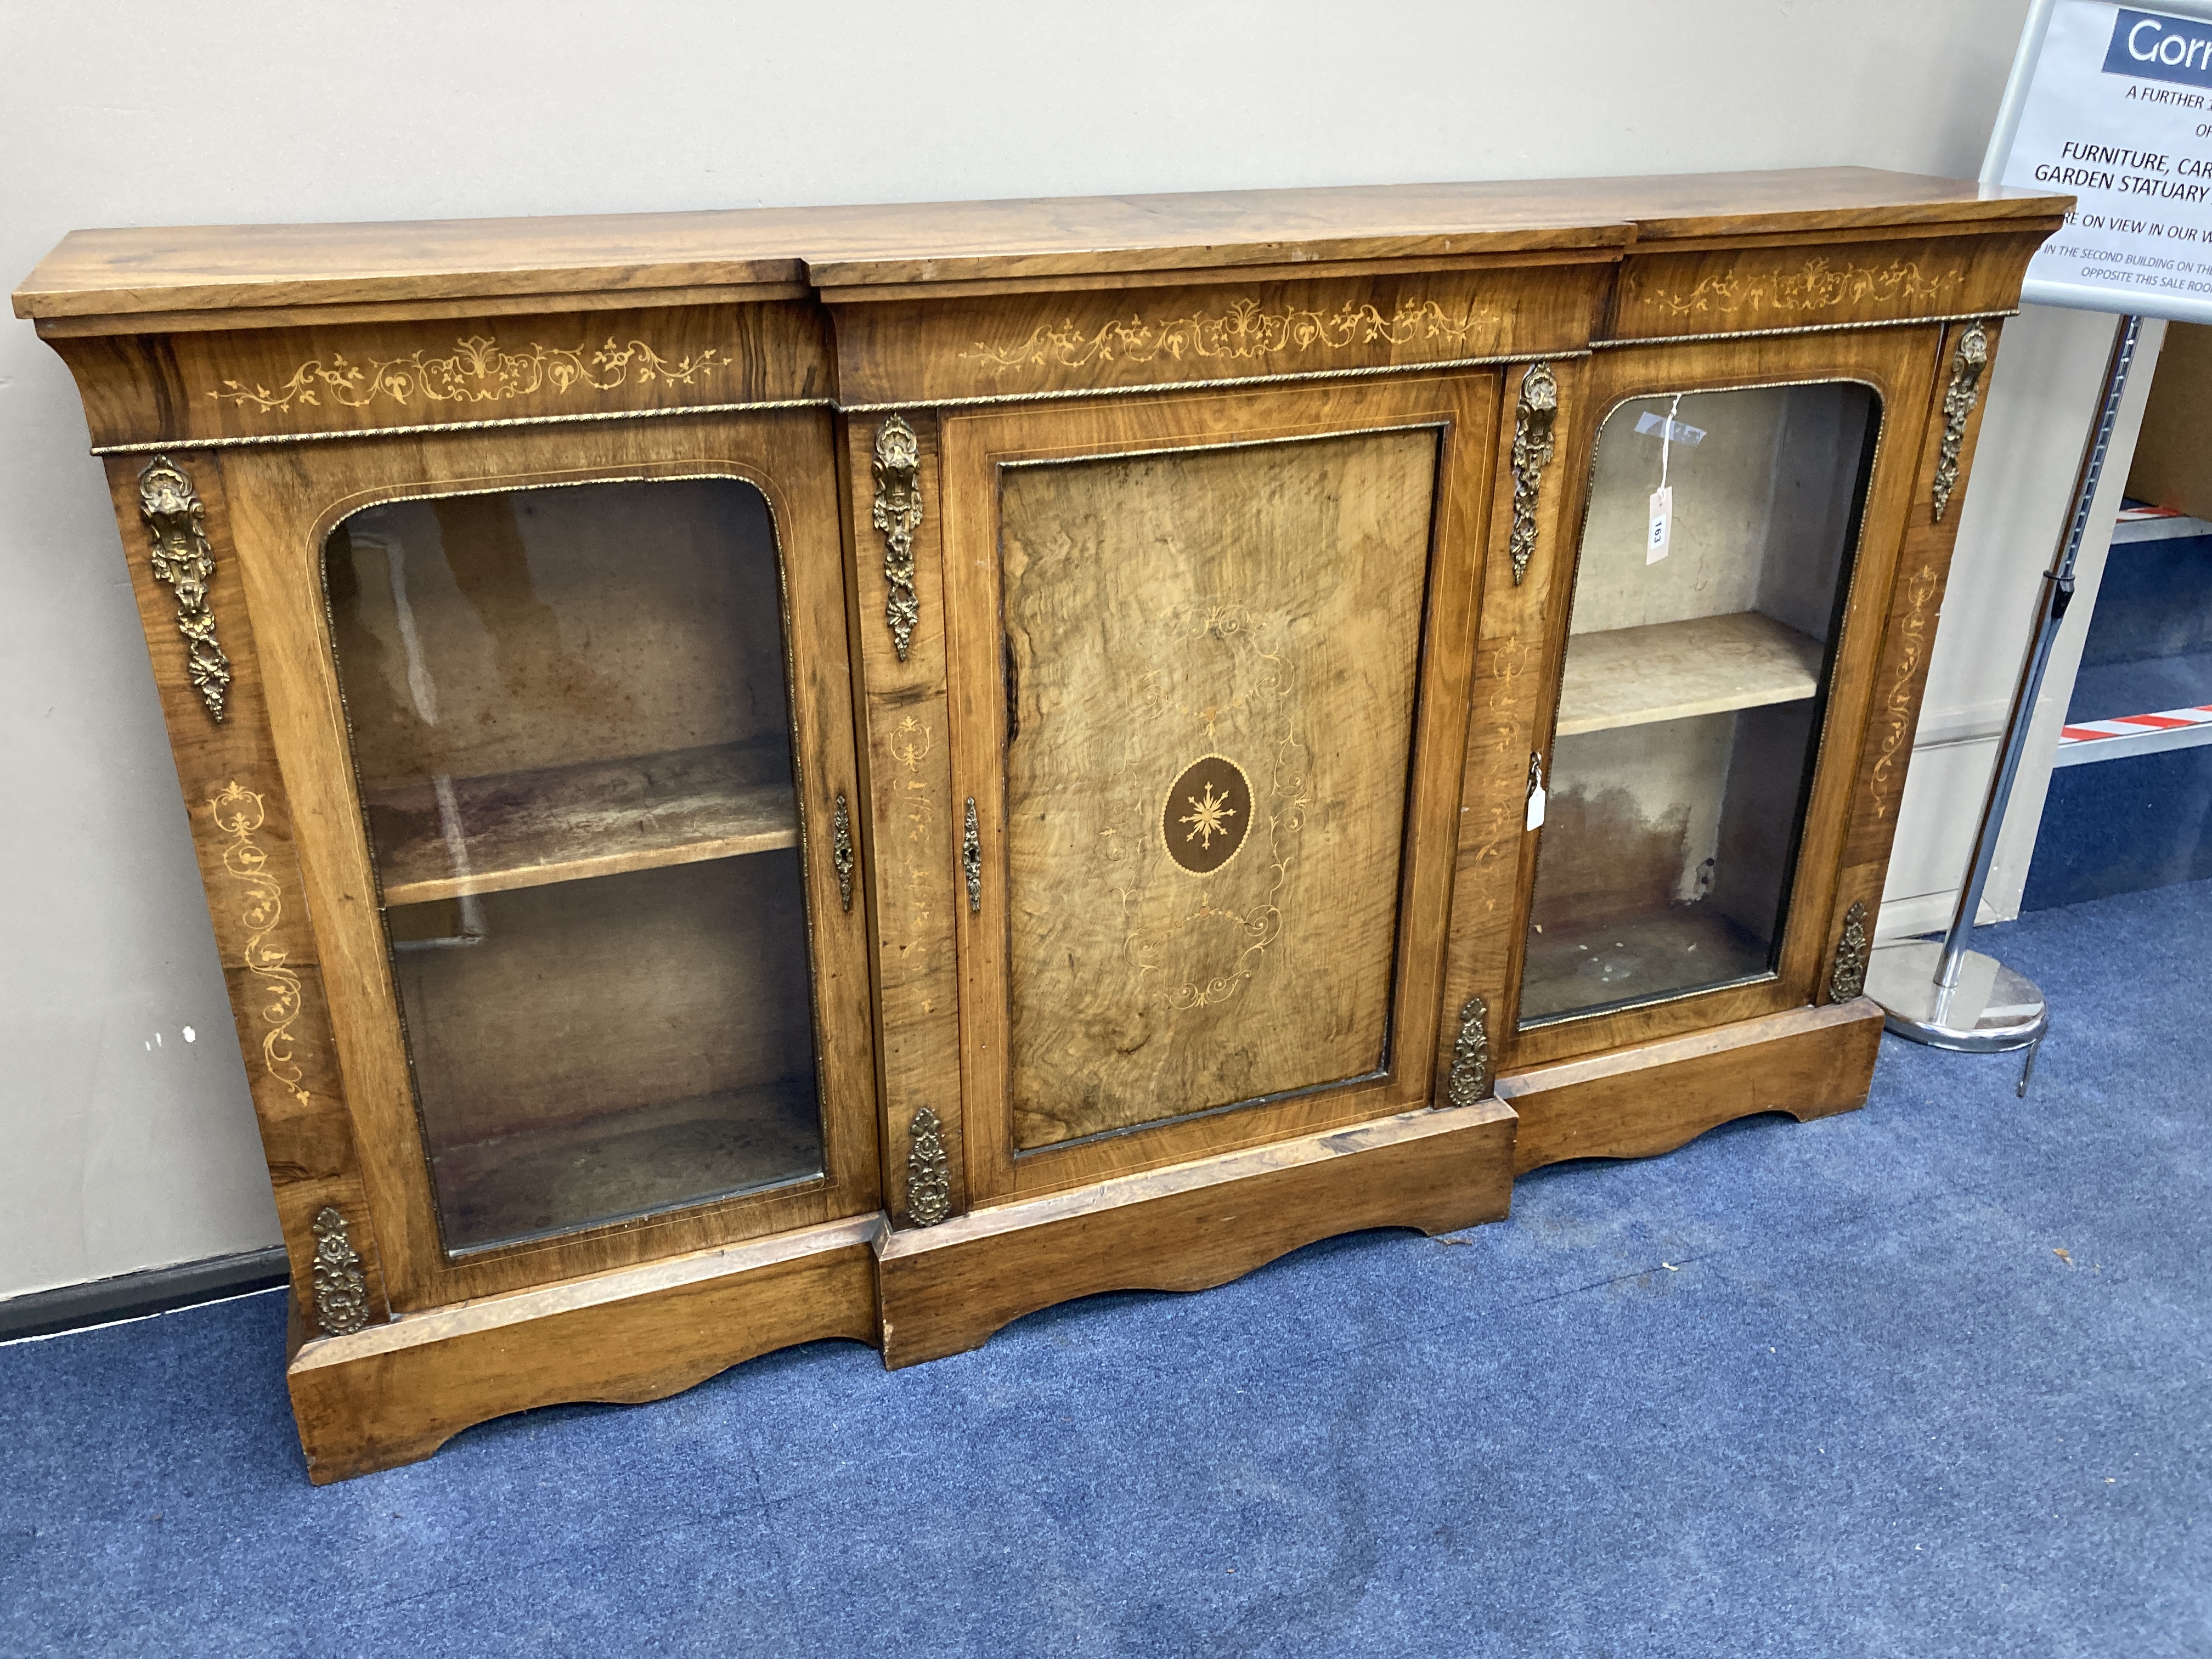 A Victorian walnut breakfront side cabinet, width 176cm, depth 34cm, height 105cm